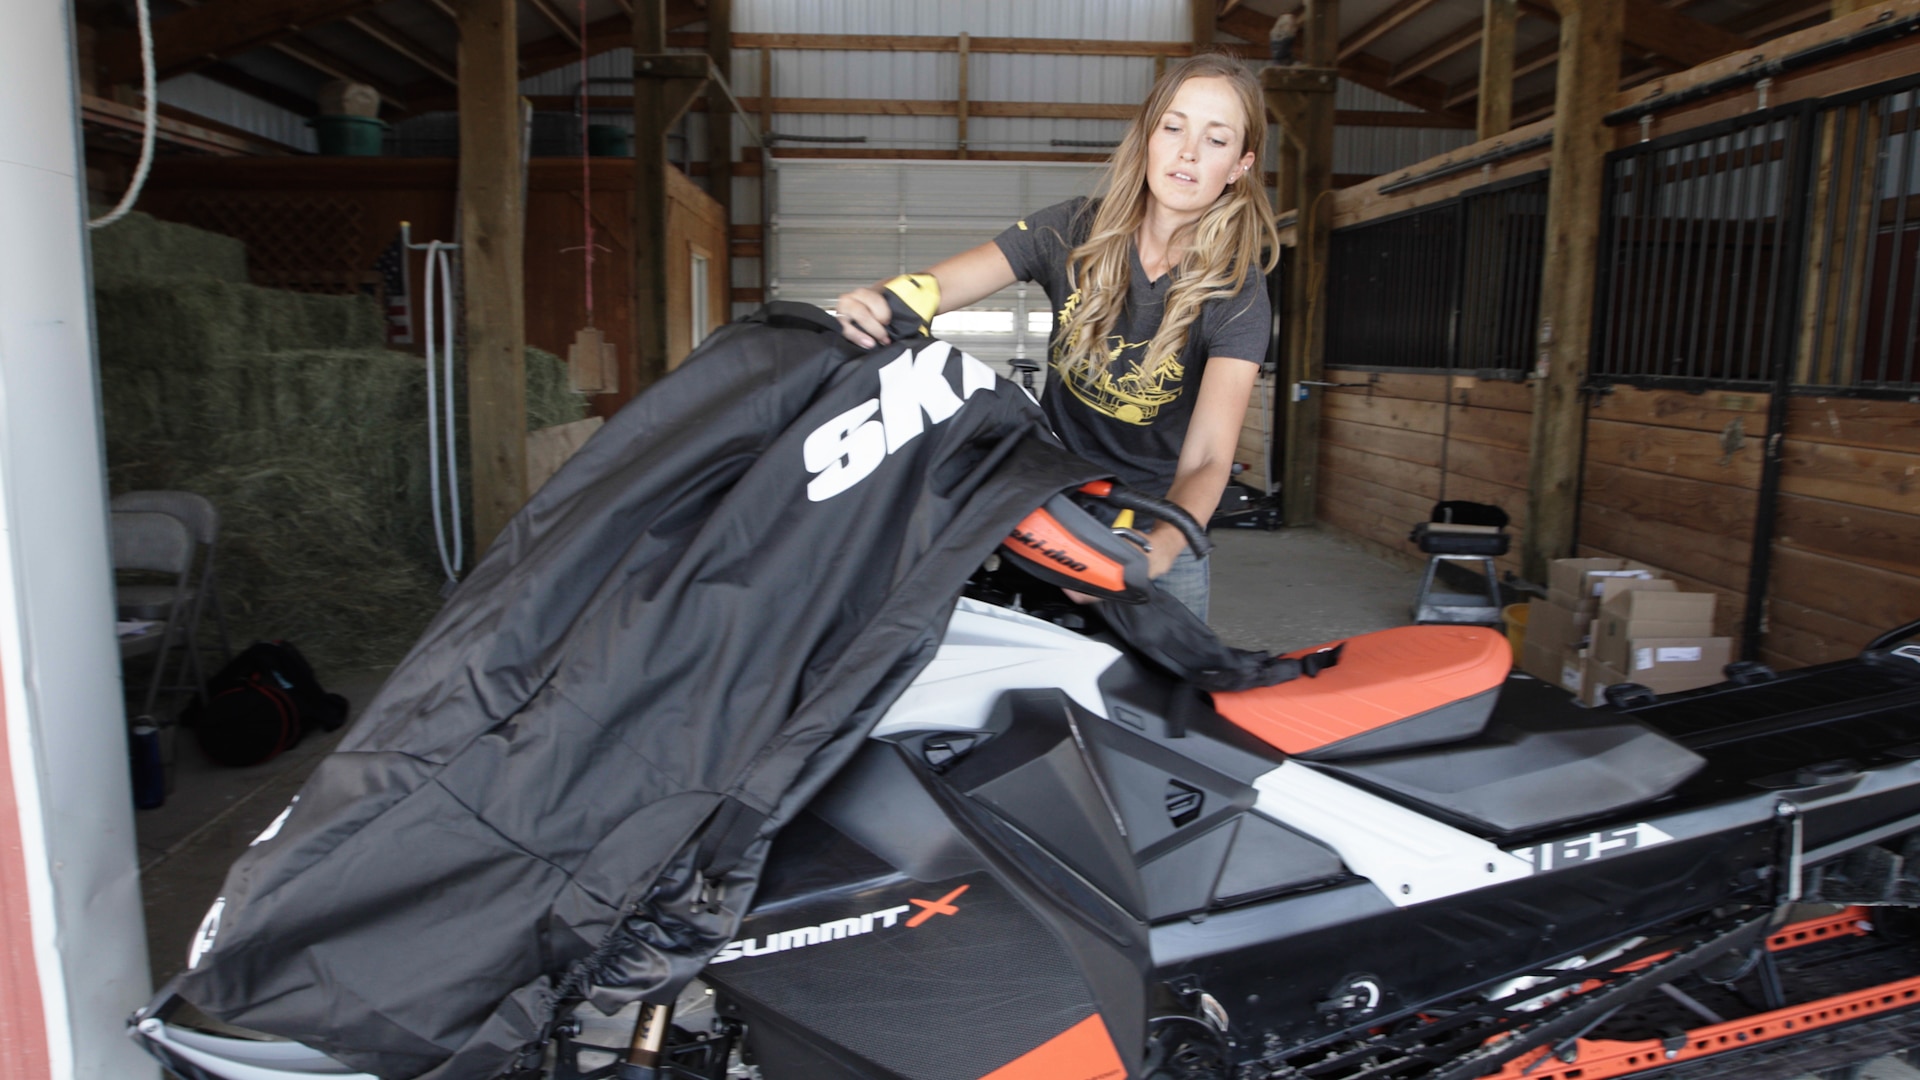 Stefanie Dean peittää Ski-Doo-moottorikelkkansa kesäsäilytystä varten